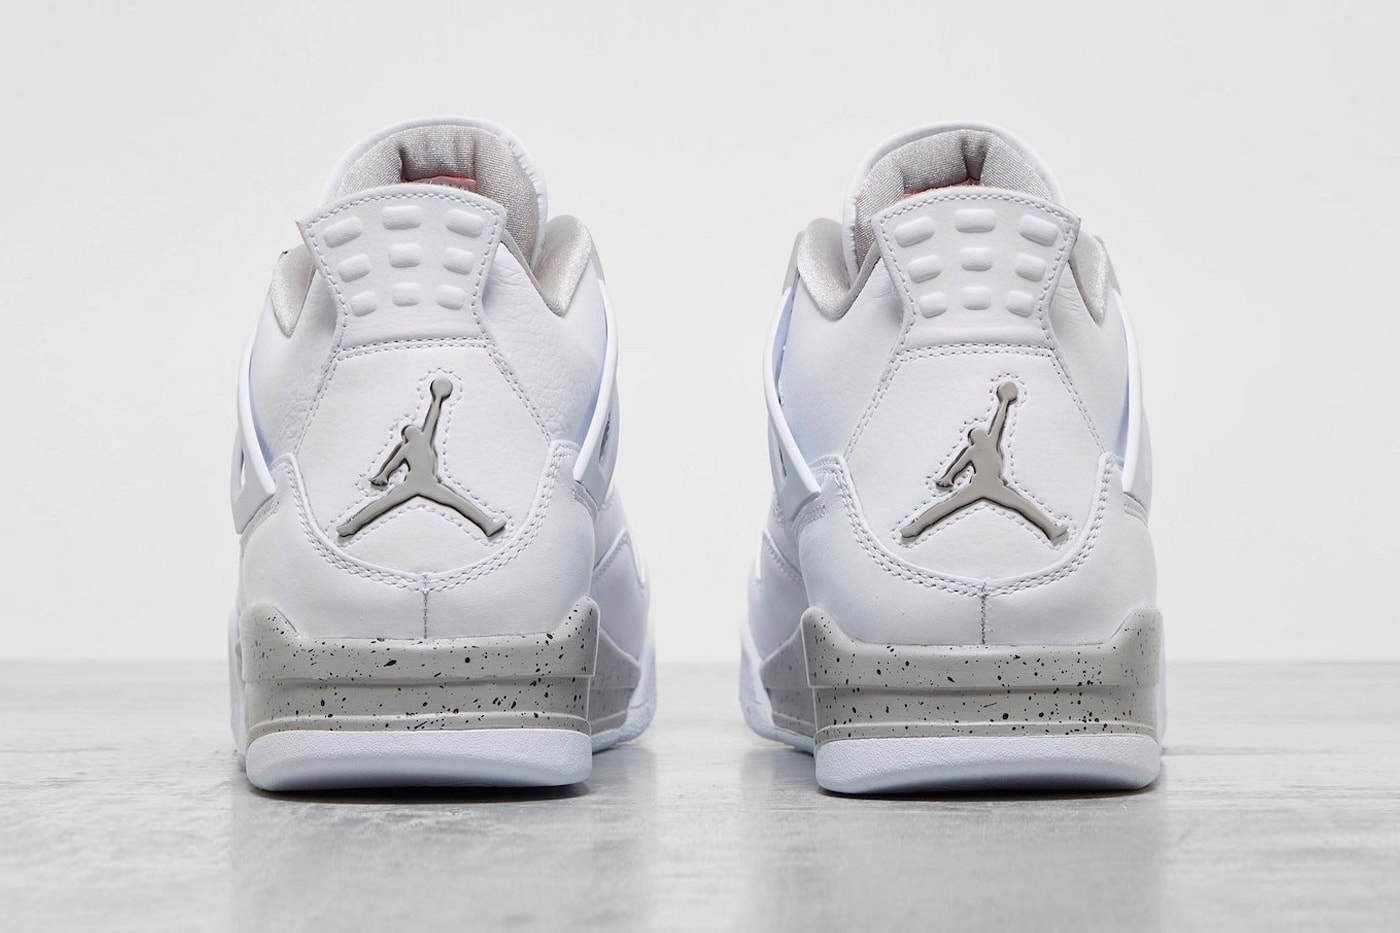 ジョーダンブランドから エアジョーダン4 の新色 “ホワイトオレオ” がリリース Air Jordan 4 White Oreo Another Look Shoebox Release Info ct8527-100 Buy Price Date 